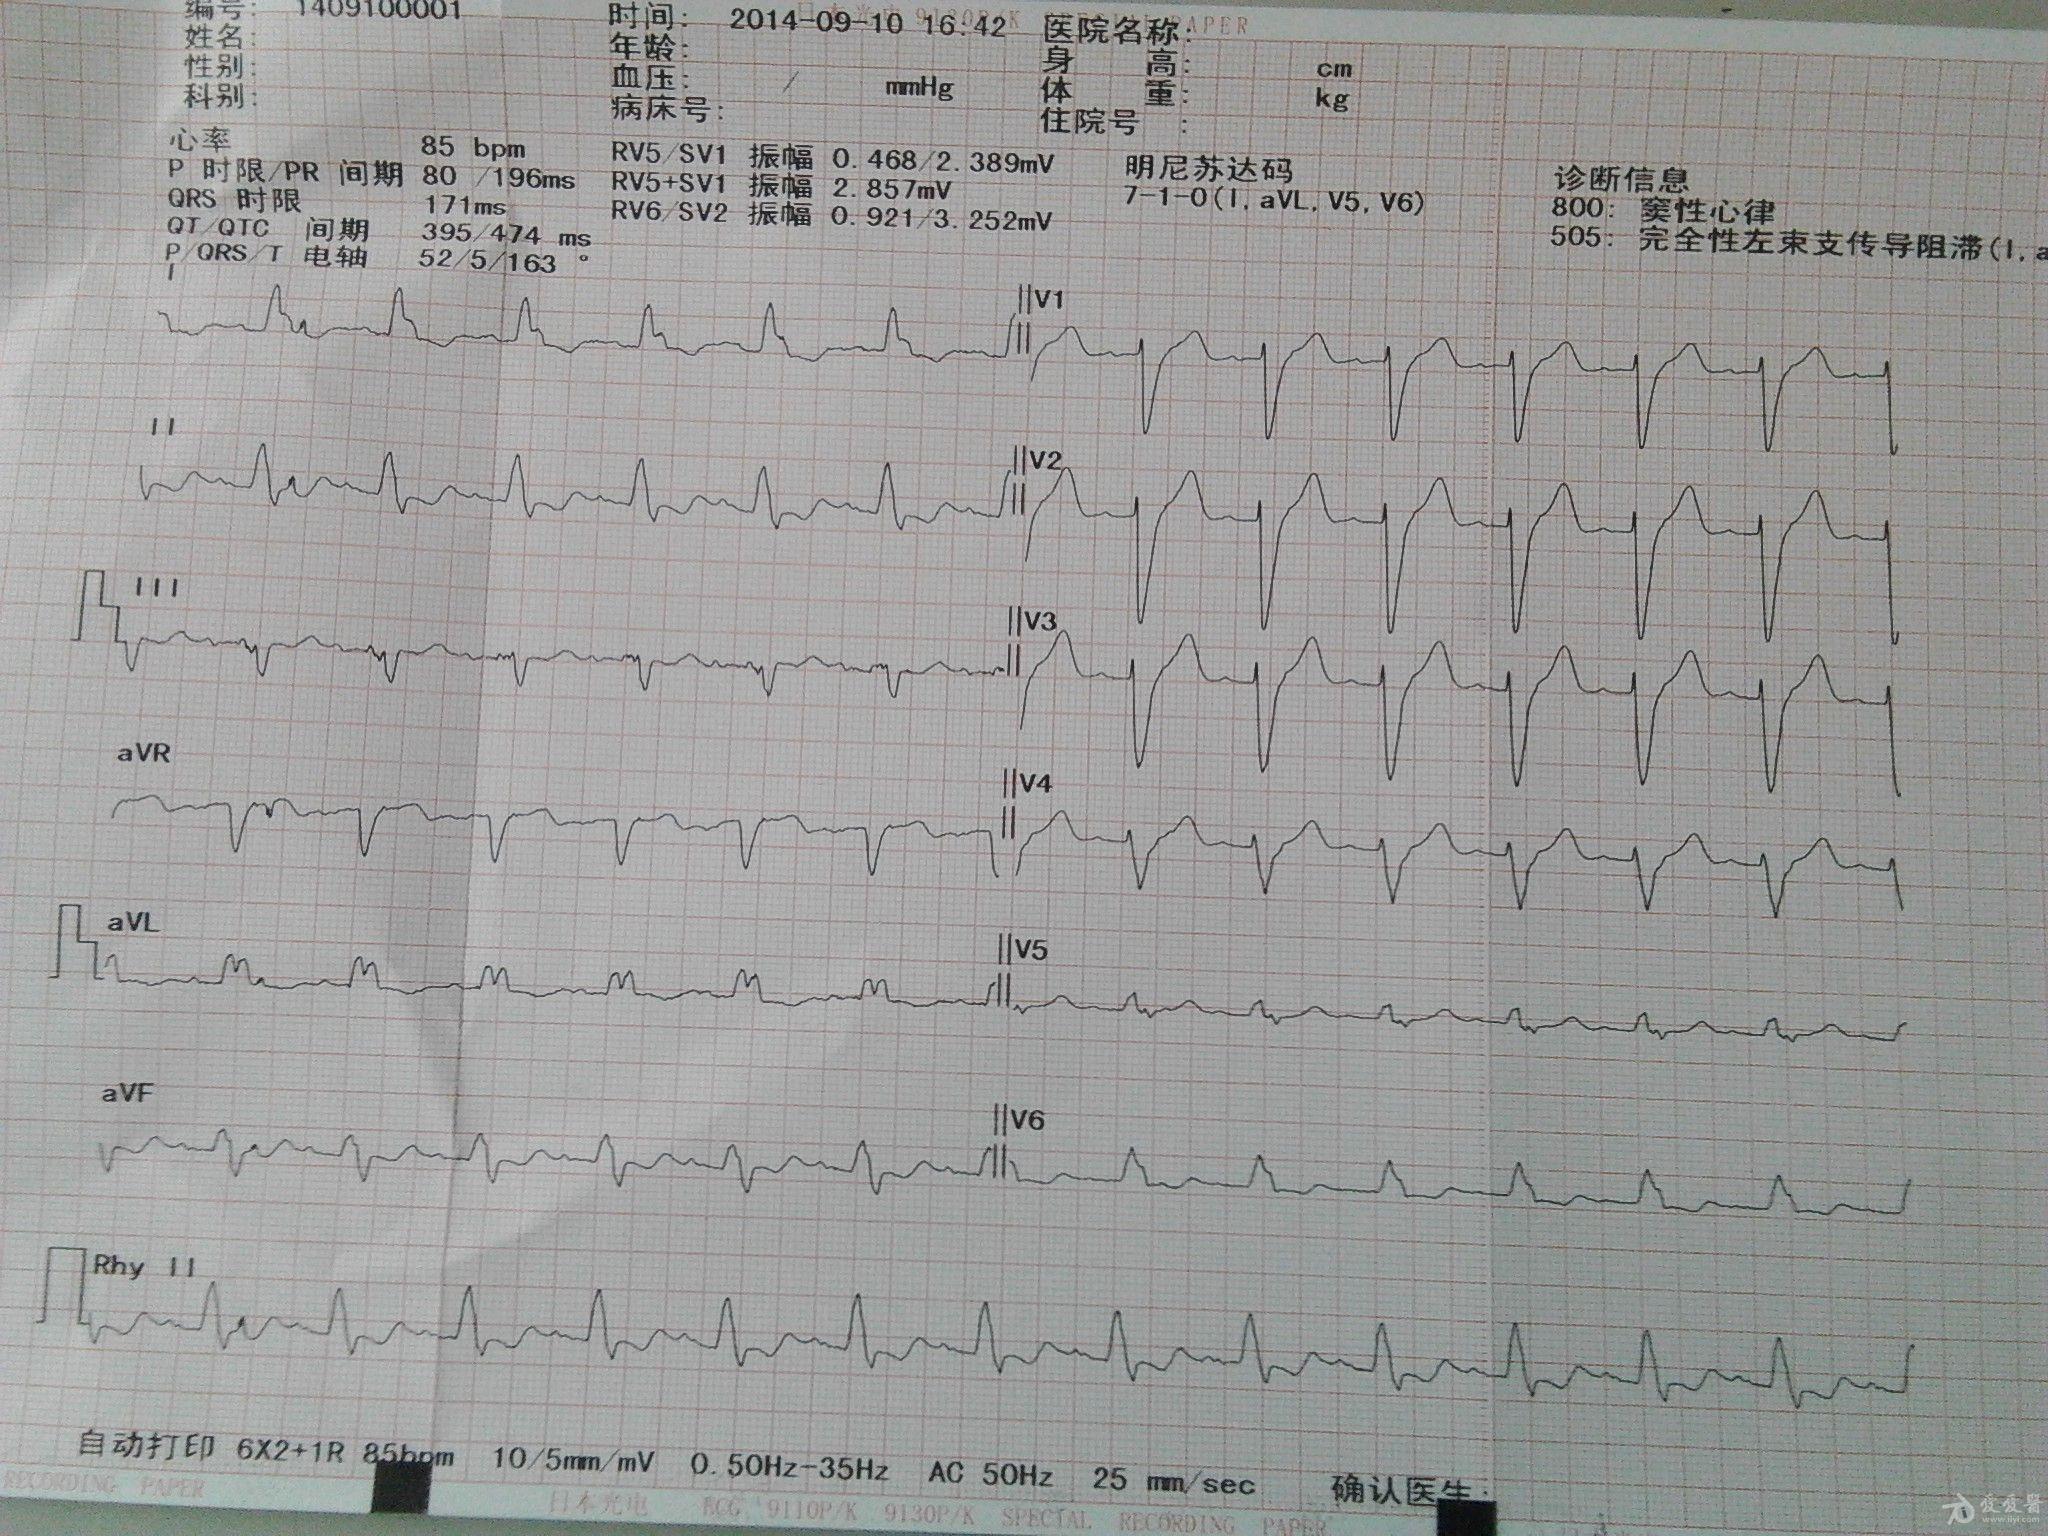 扩张性心脏病的心电图,大家看看